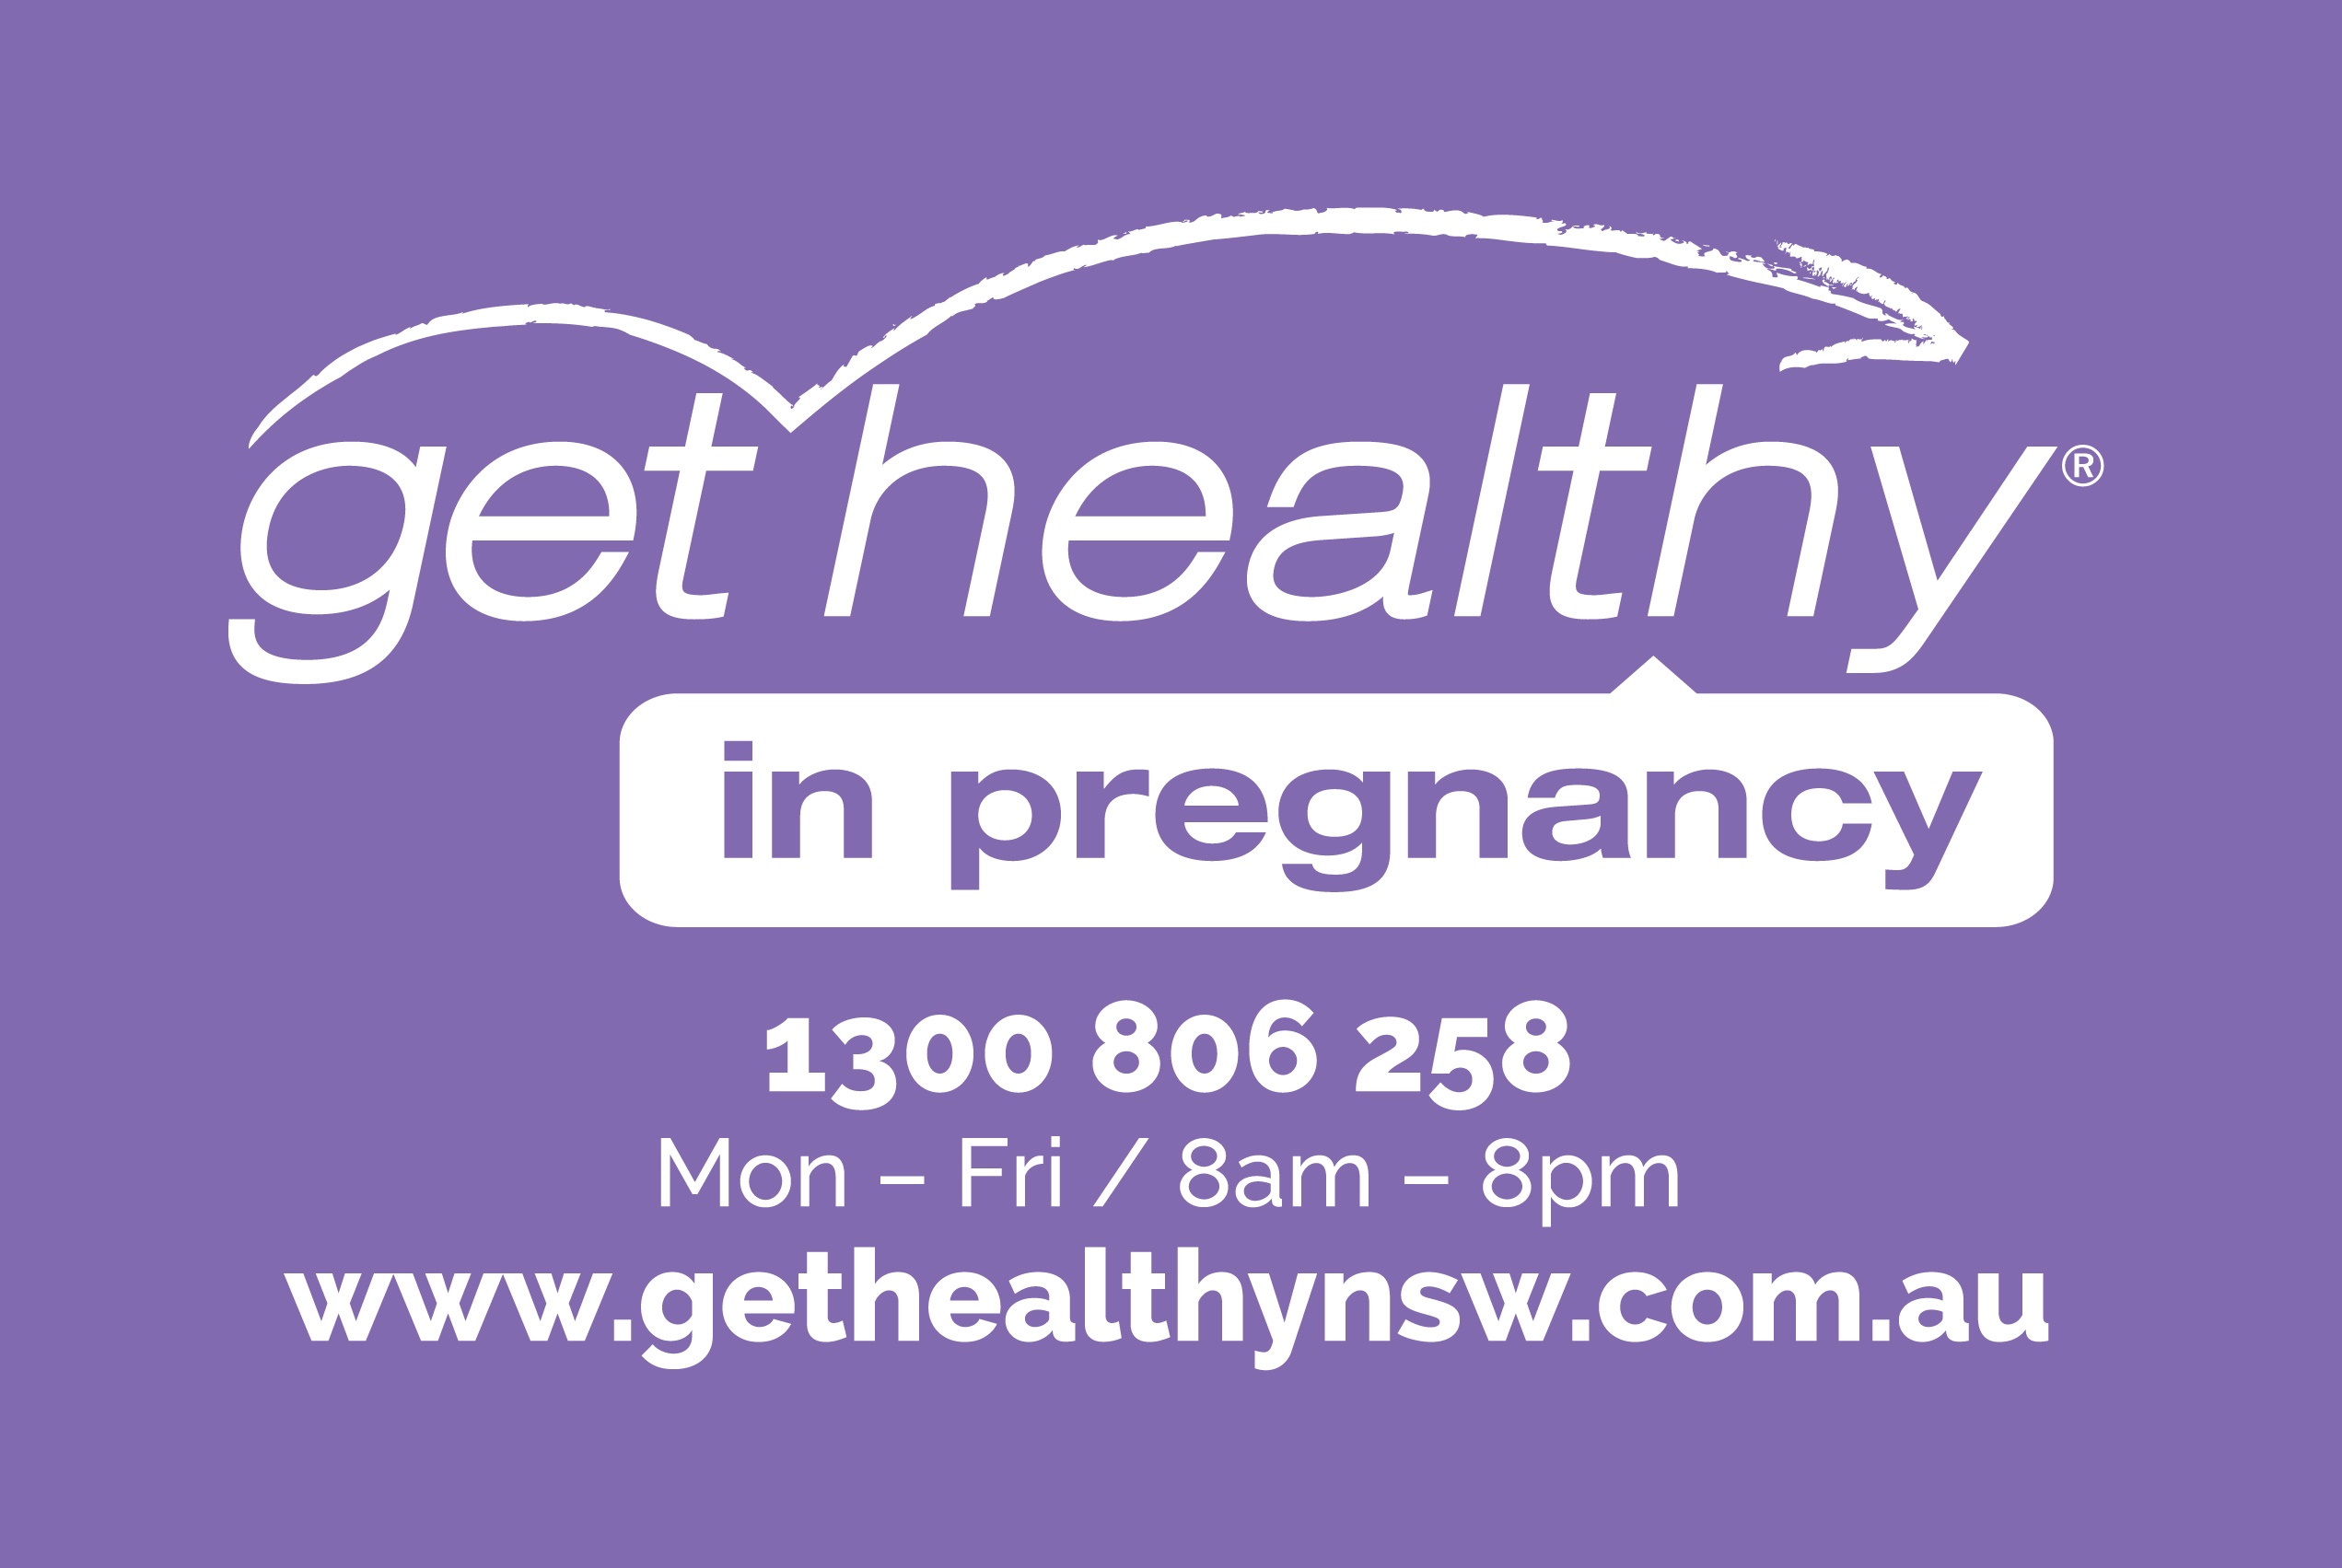 https://www.gethealthynsw.com.au/program/get-healthy-in-pregnancy/